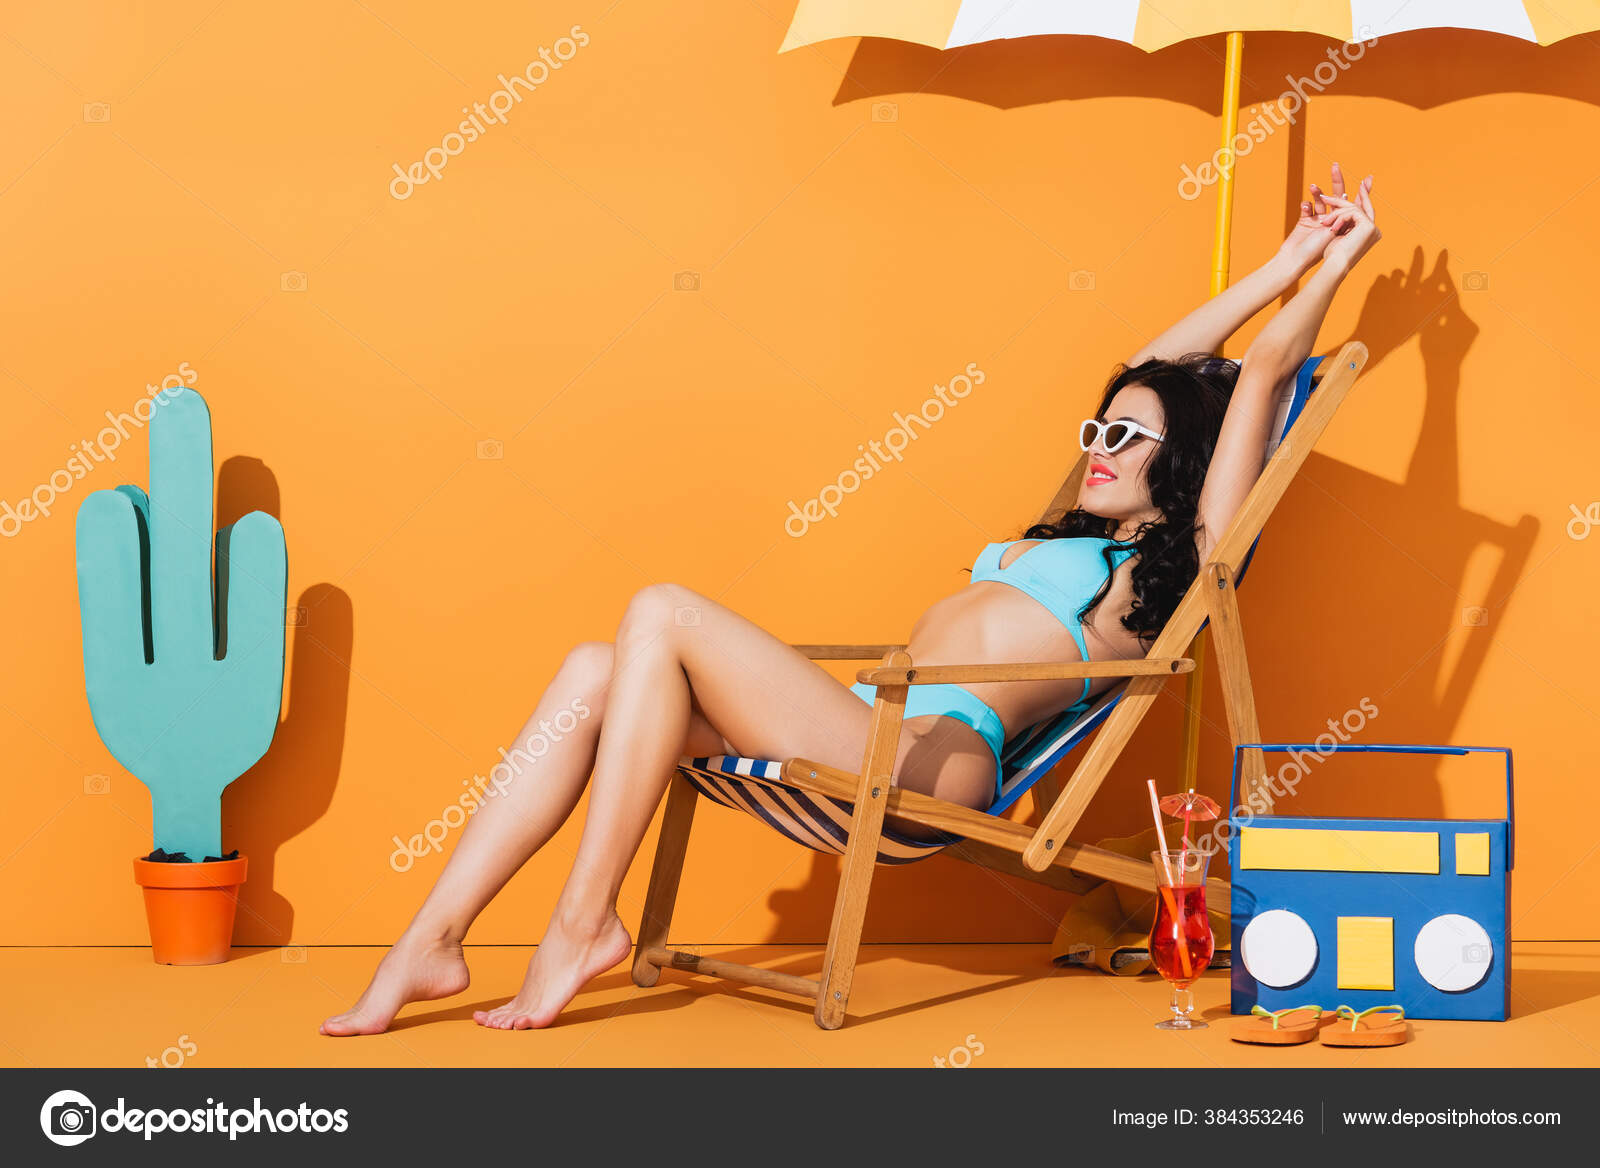 Жена сидя на шезлонге показывает киску фото